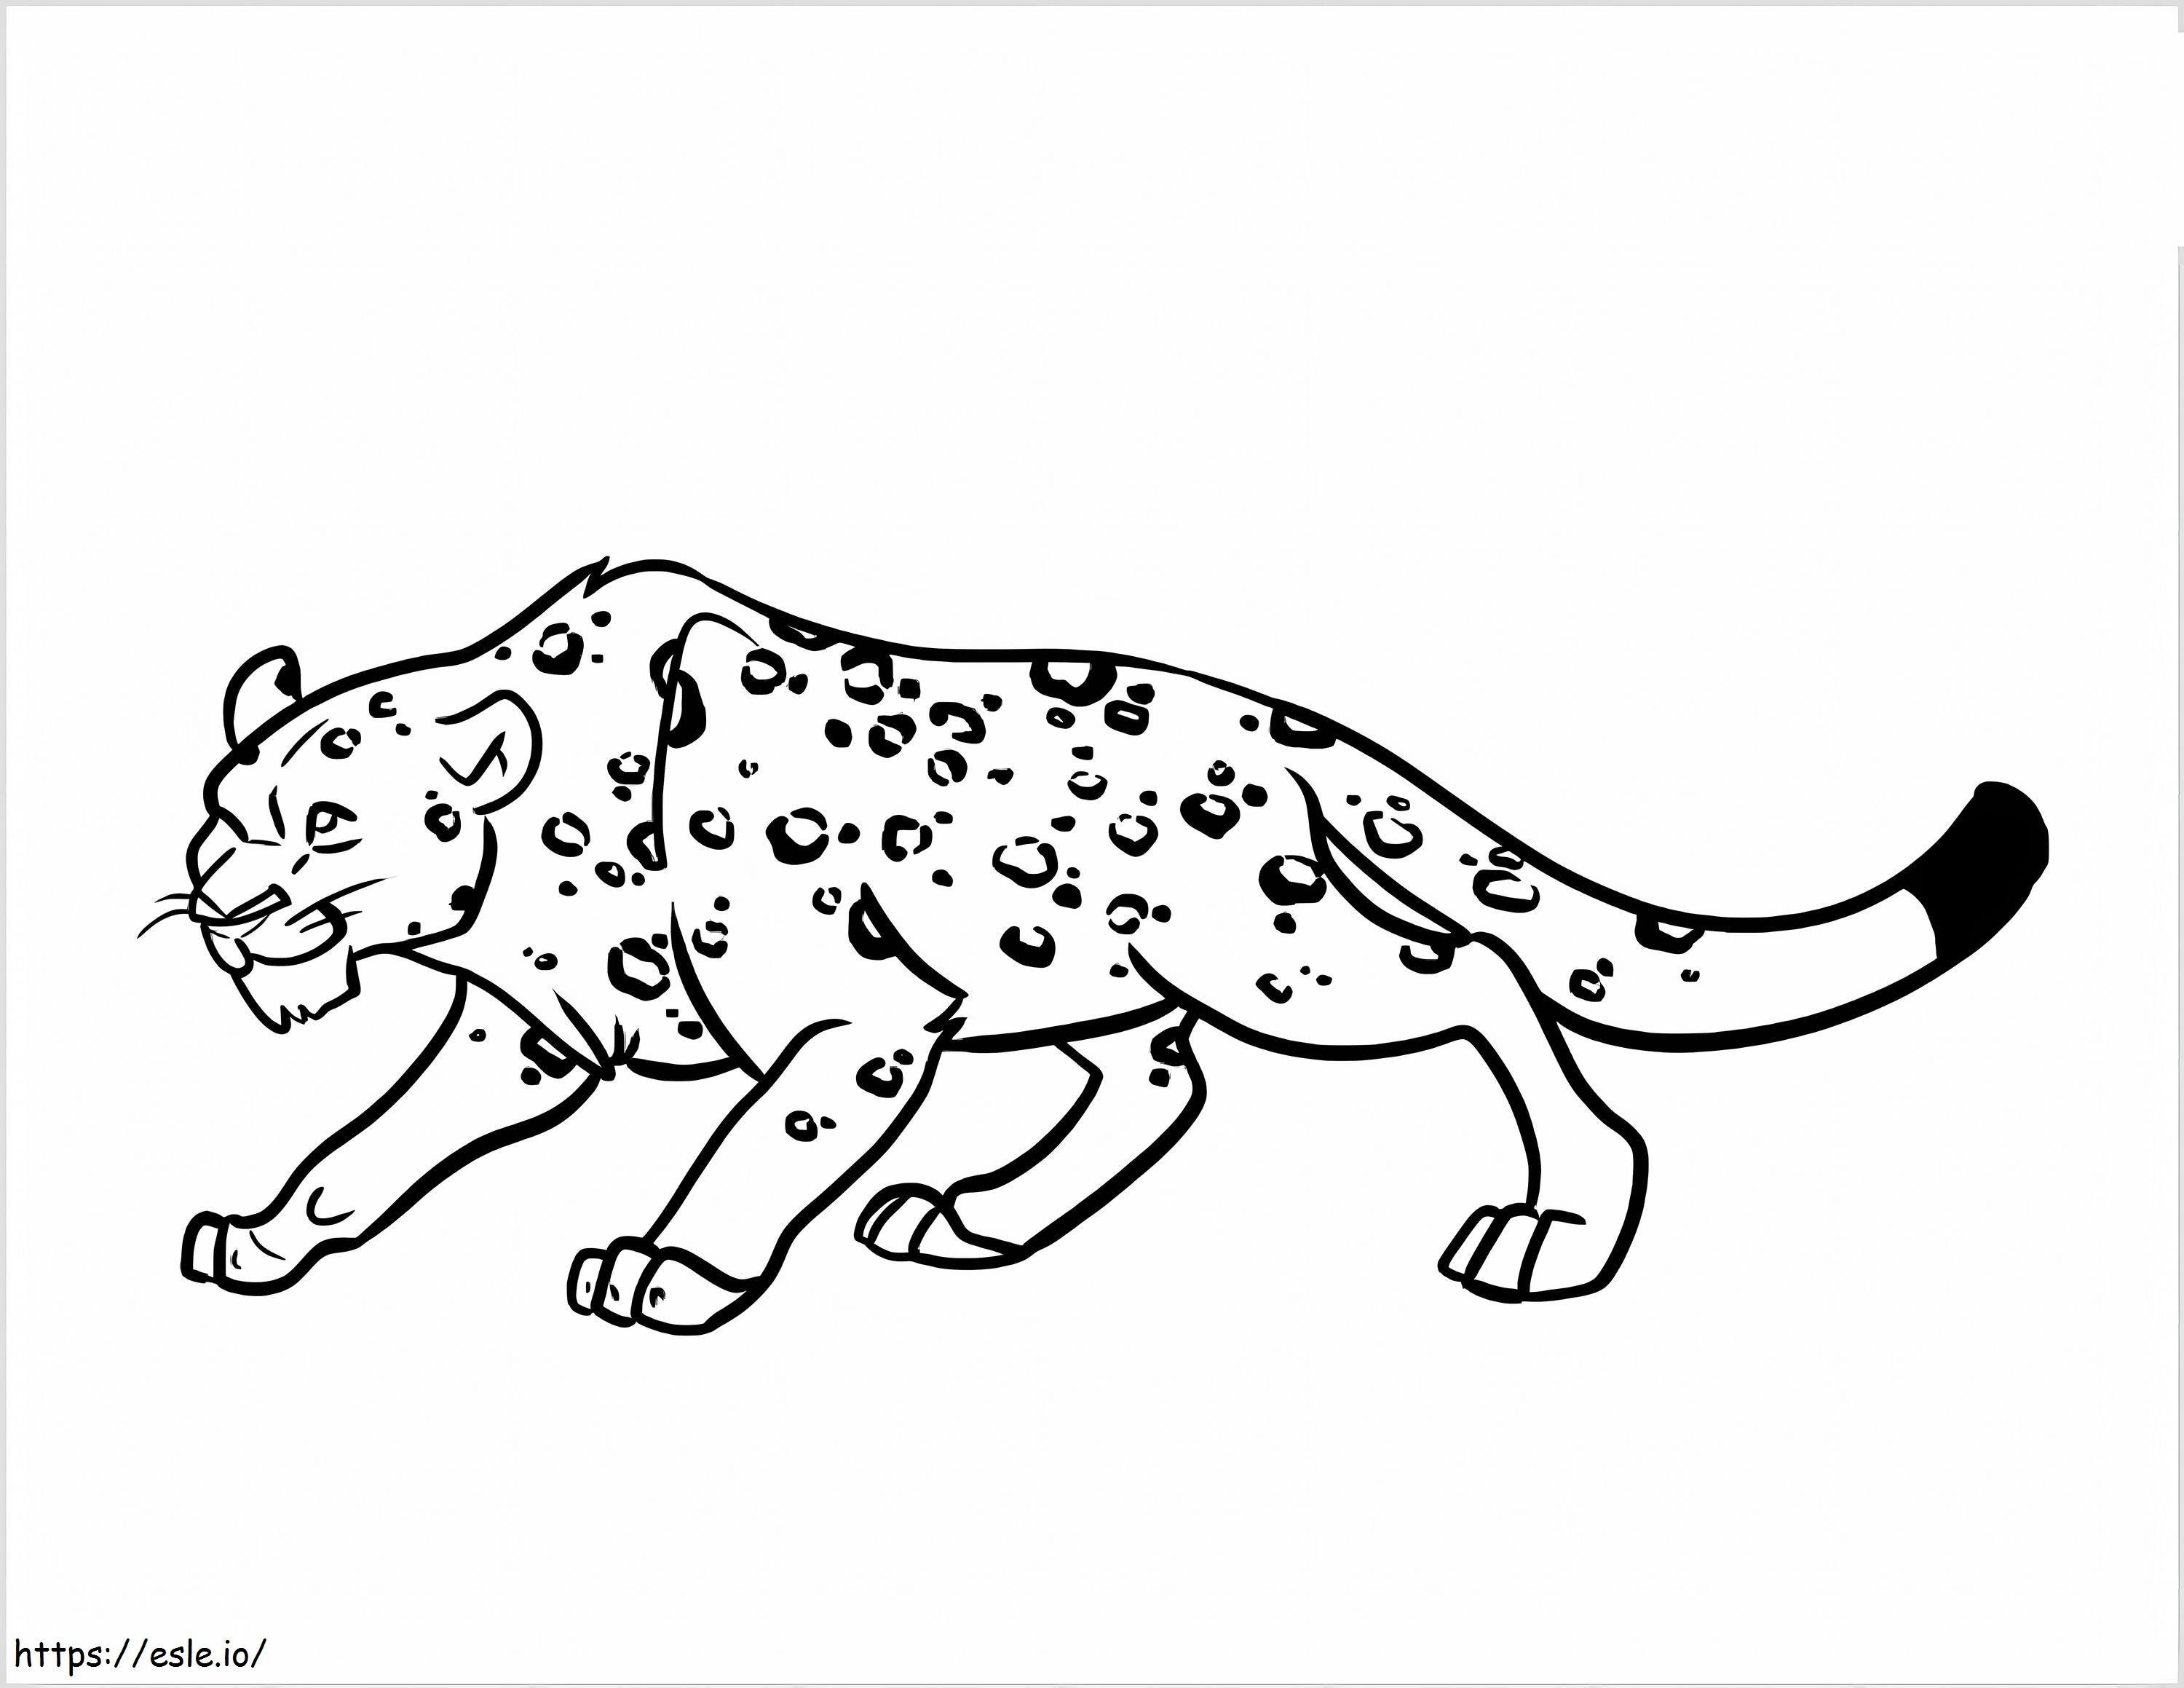 Impresionante leopardo para colorear